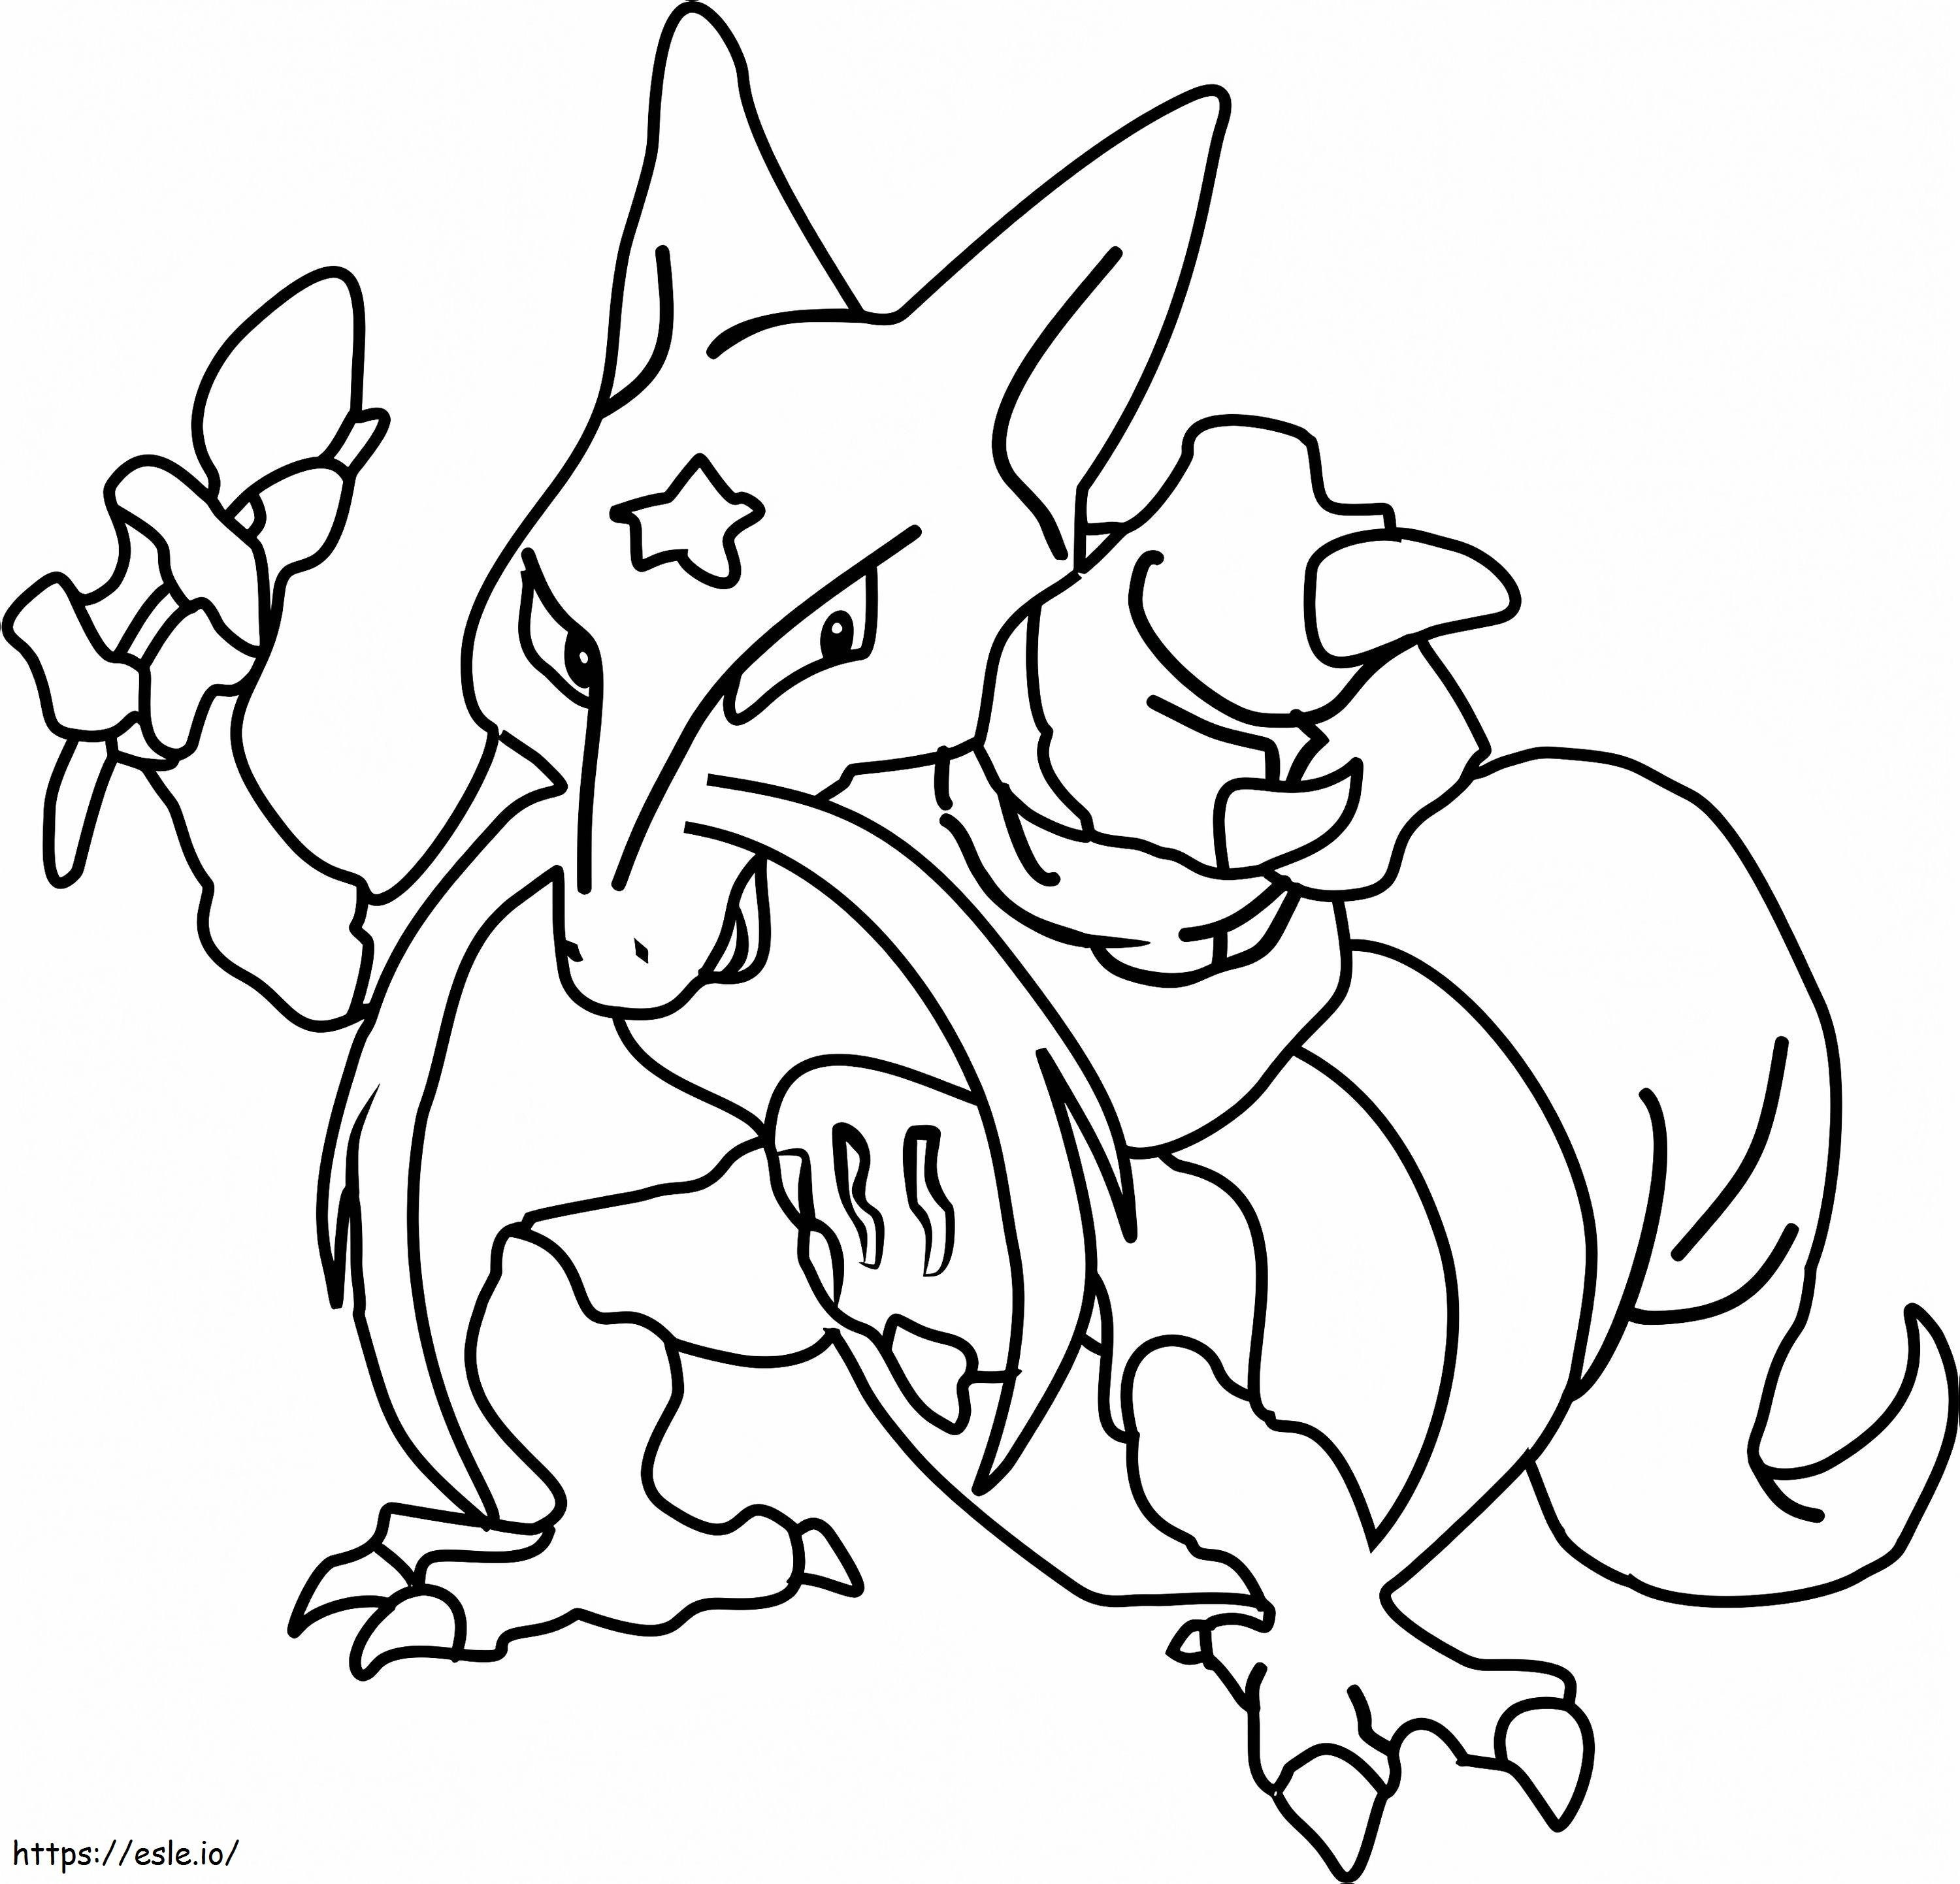 Coloriage 1530498873 Pokémon Kadabra1 à imprimer dessin